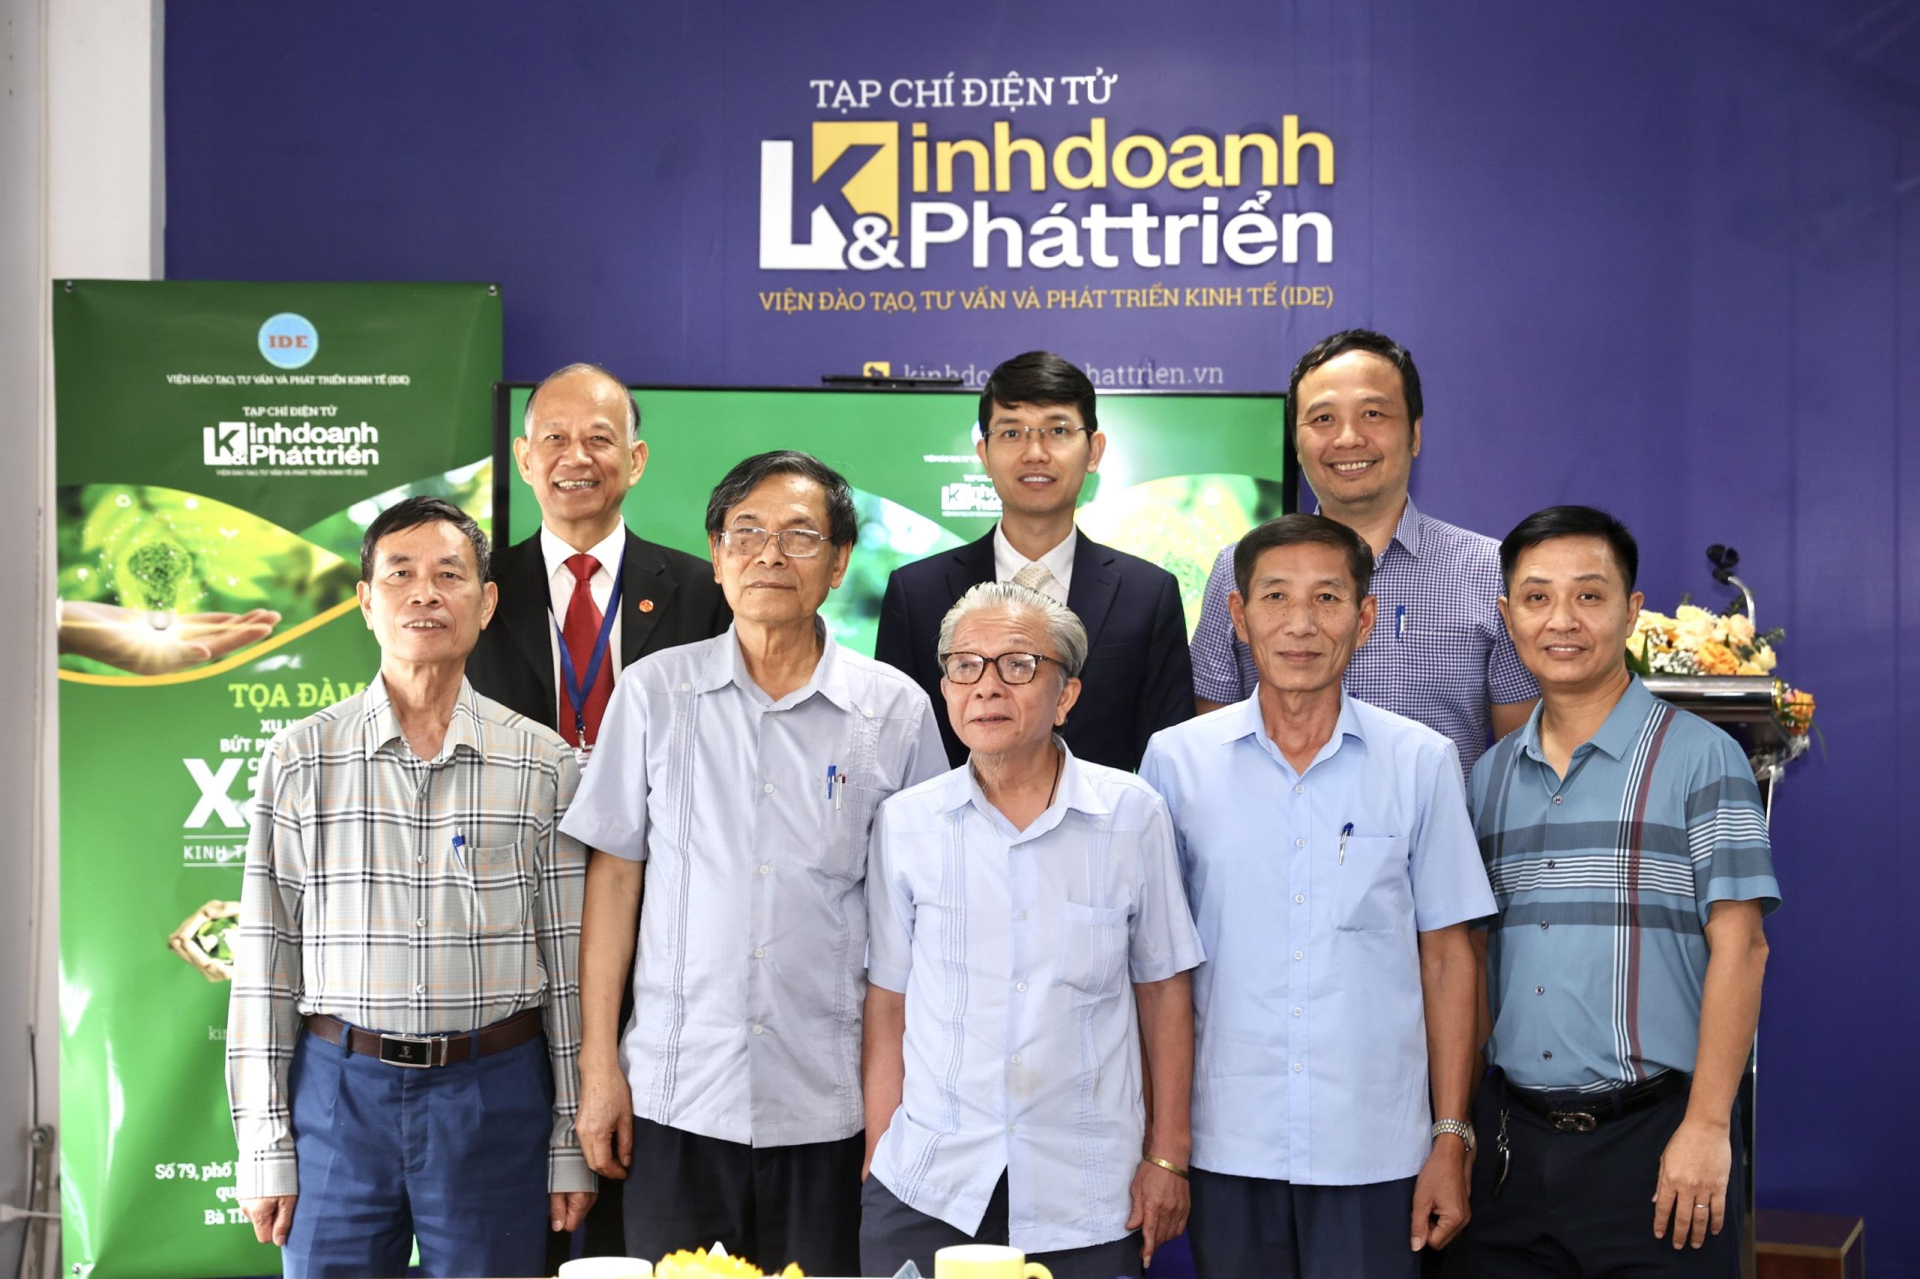 Hành trình chuyển đổi xanh, phát triển kinh tế tuần hoàn của doanh nghiệp Việt - ảnh 3